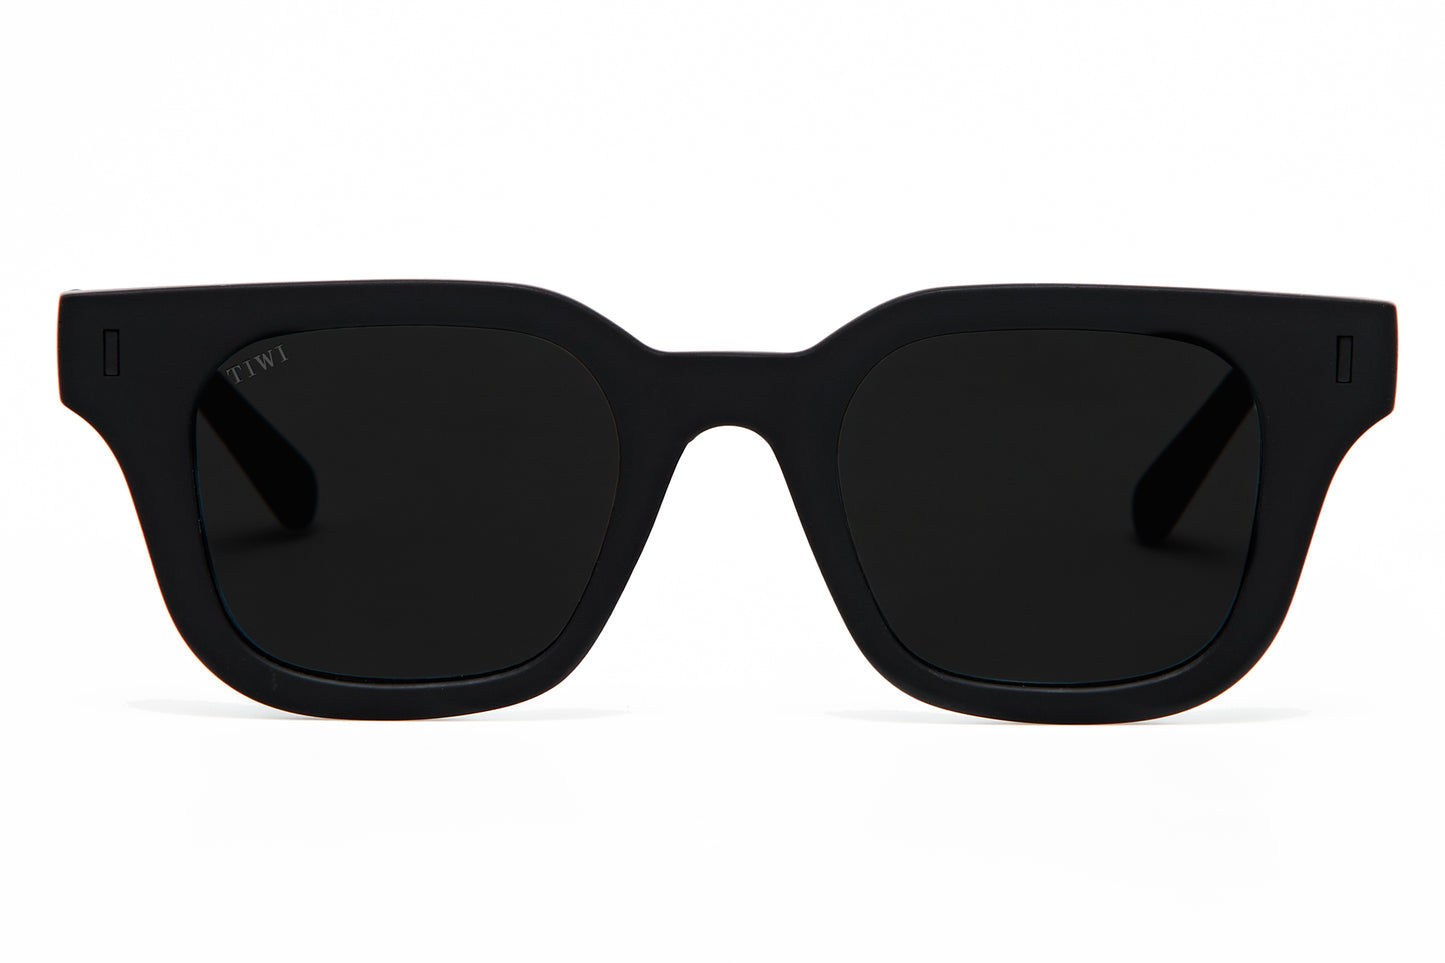 Lio 900 Sunglasses